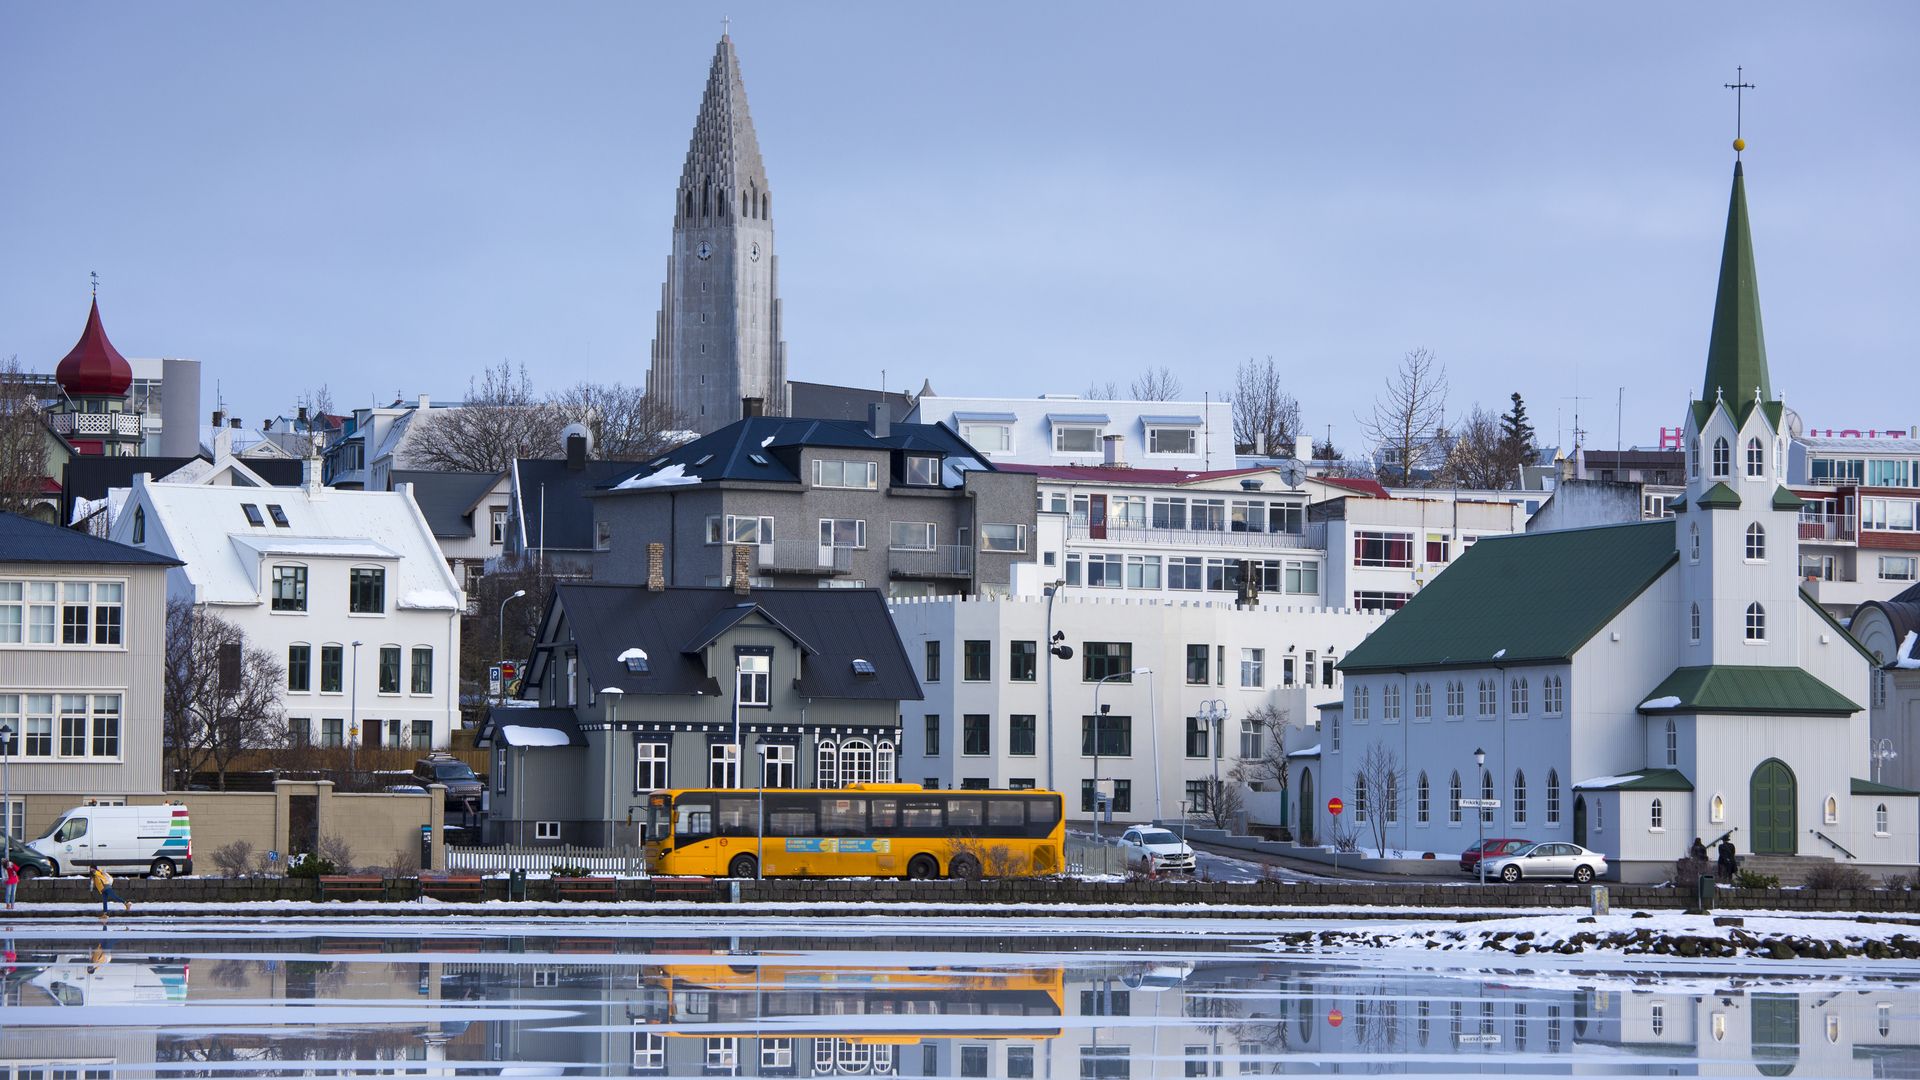 Reykjavik, Iceland.